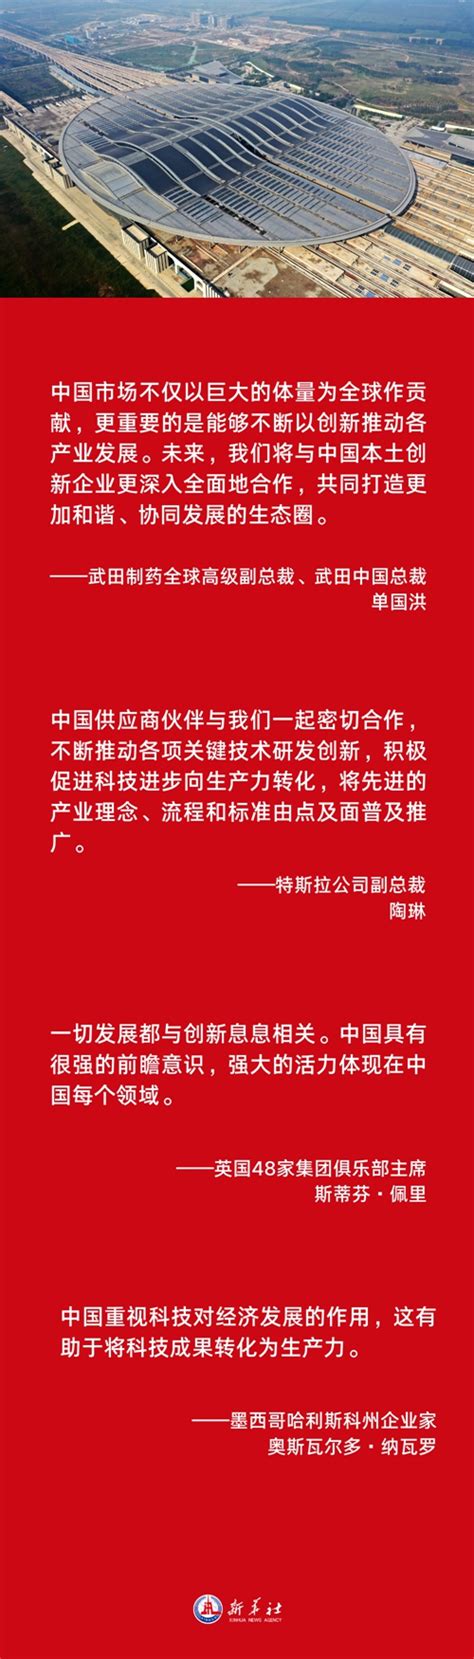 海报 | 中国式现代化是世界机遇 - 当代先锋网 - 政能量